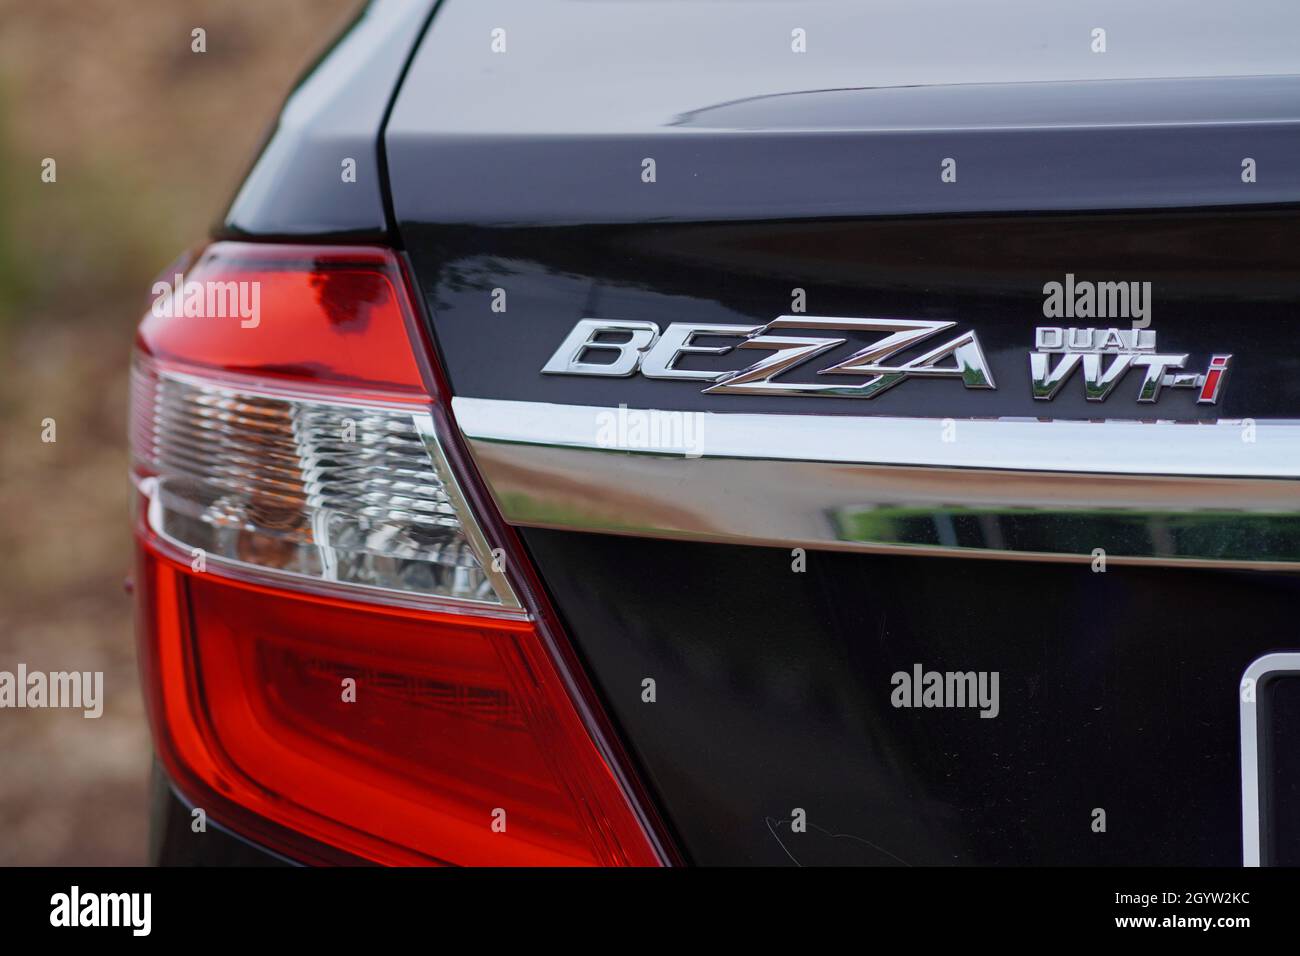 Vista posteriore di un'auto malese Perodua Bezza nera che mostra il fanalino di coda e il logo BEZZA VVTI. La Perodua Bezza è un'auto a risparmio di carburante. Foto Stock